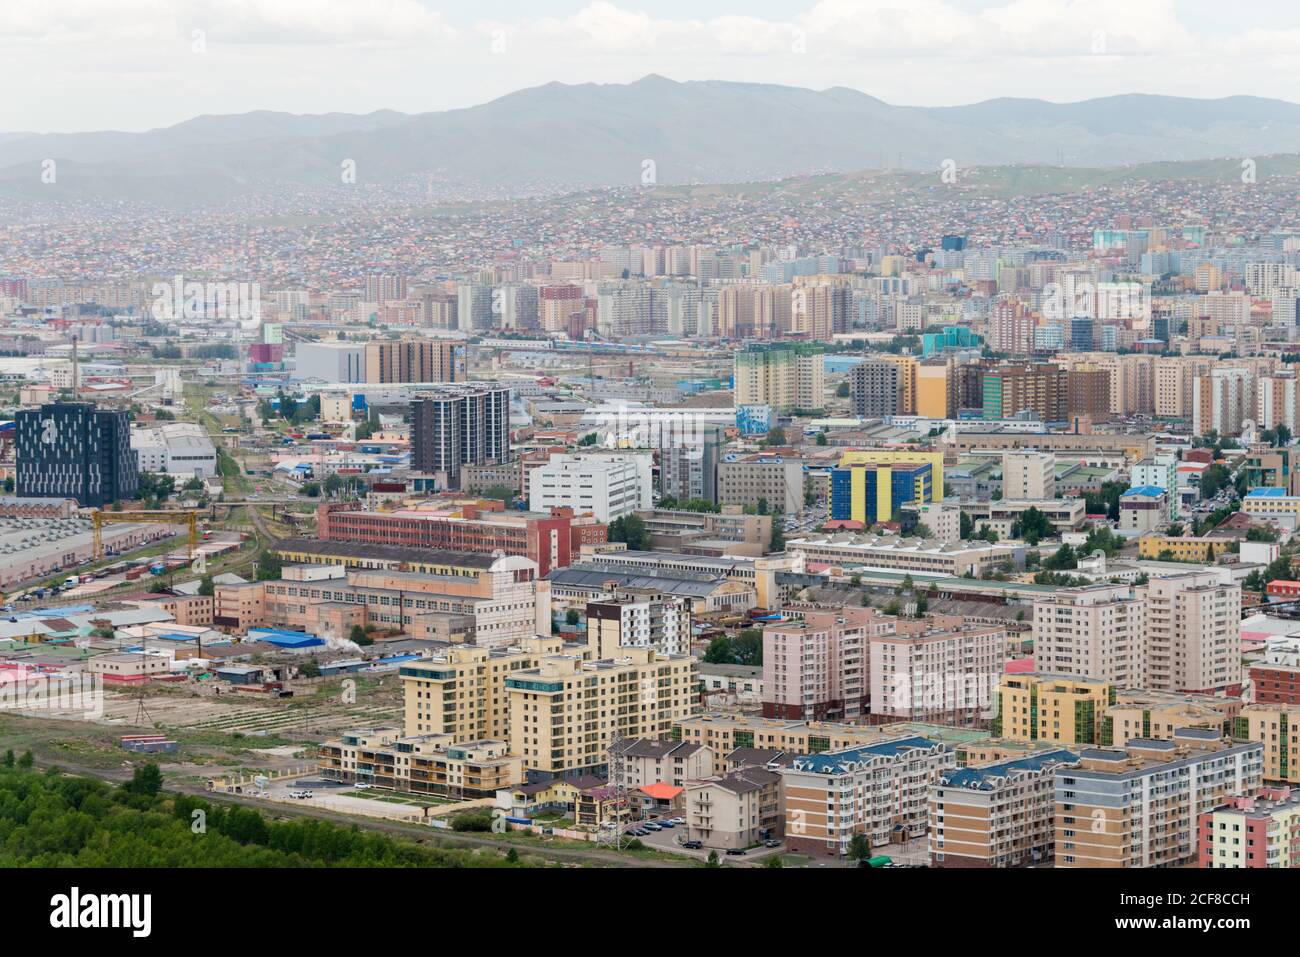 mongolian capital city